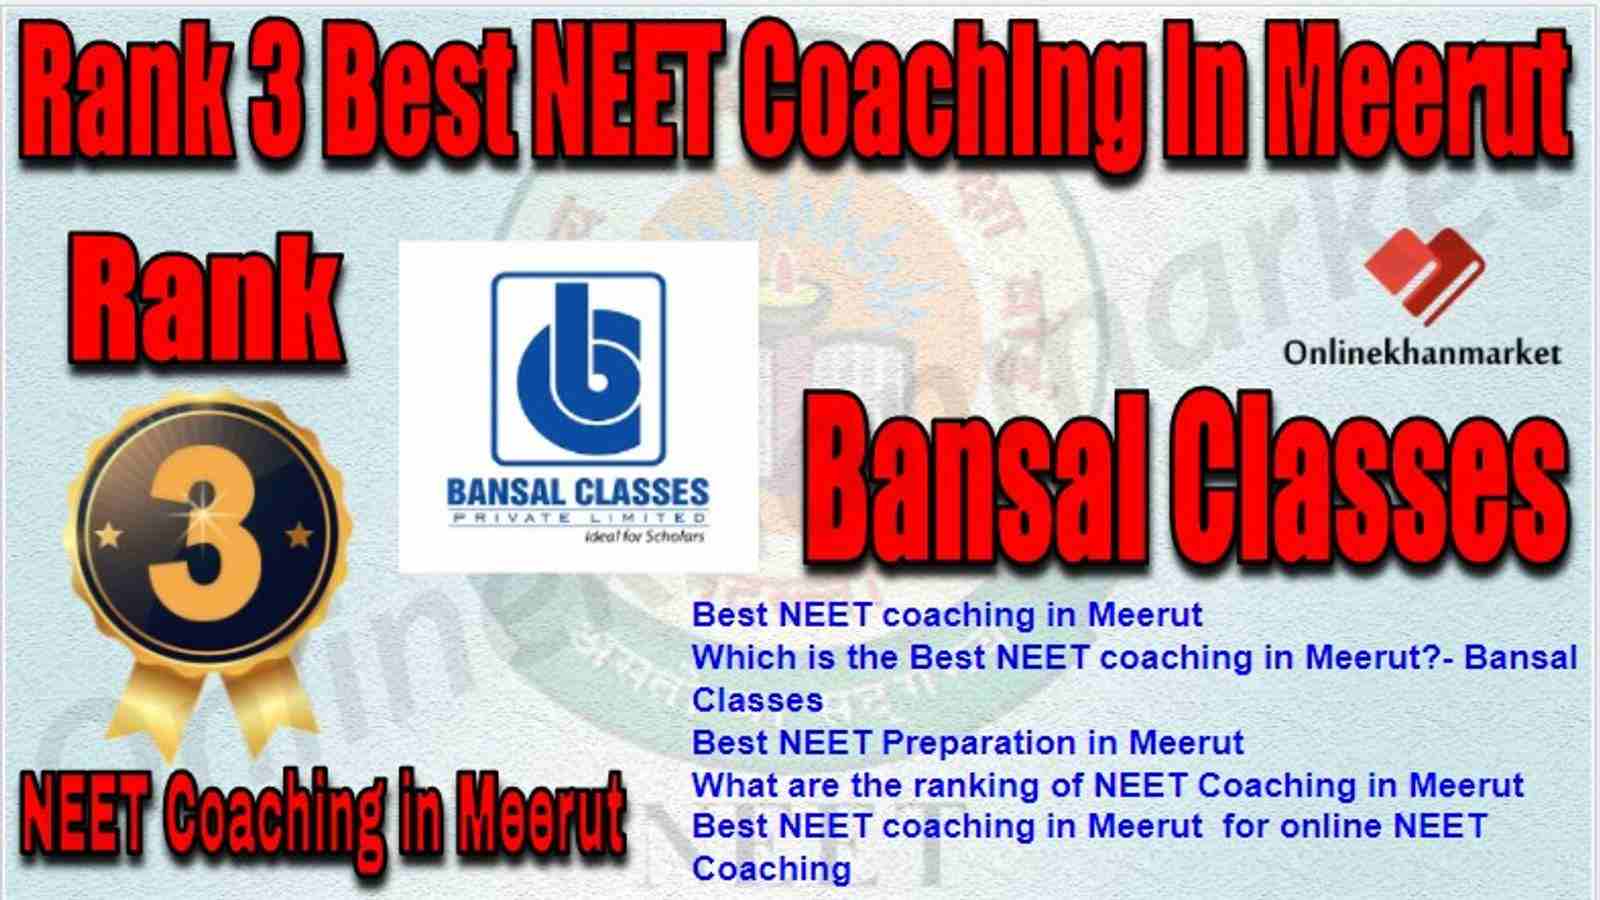 Rank 3 Best NEET Coaching meerut